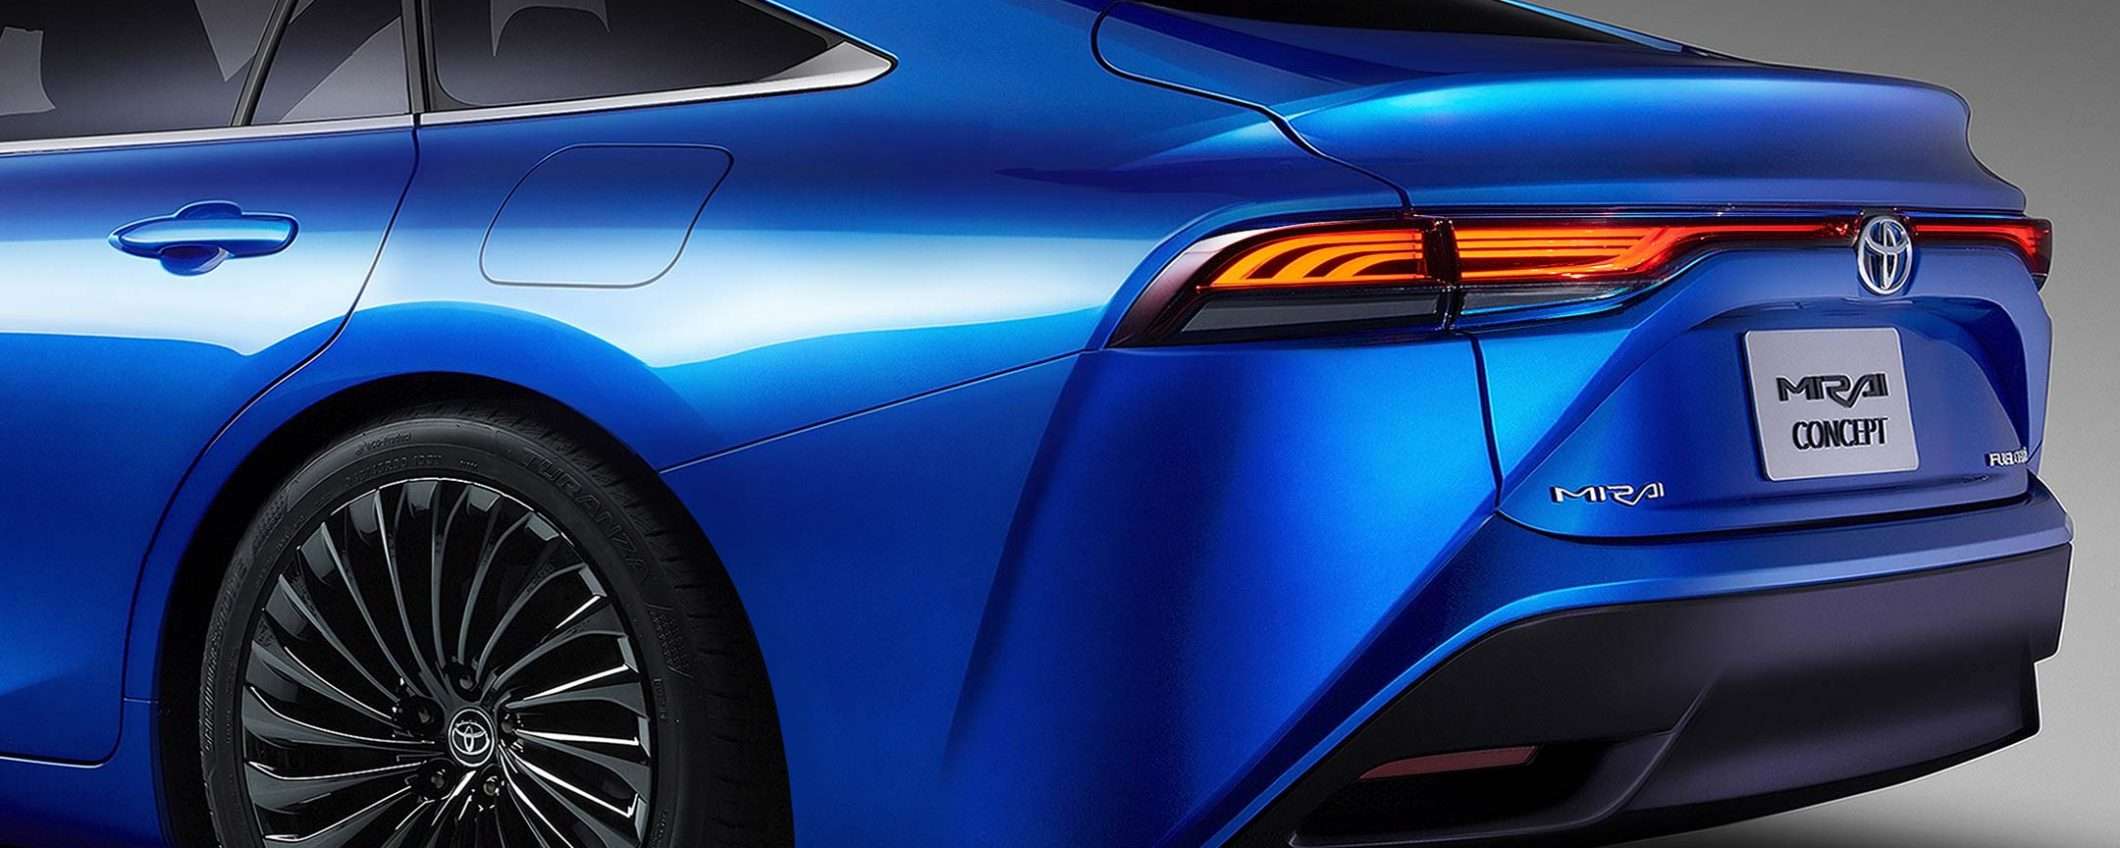 Da Toyota la Mirai a idrogeno e la LQ self-driving